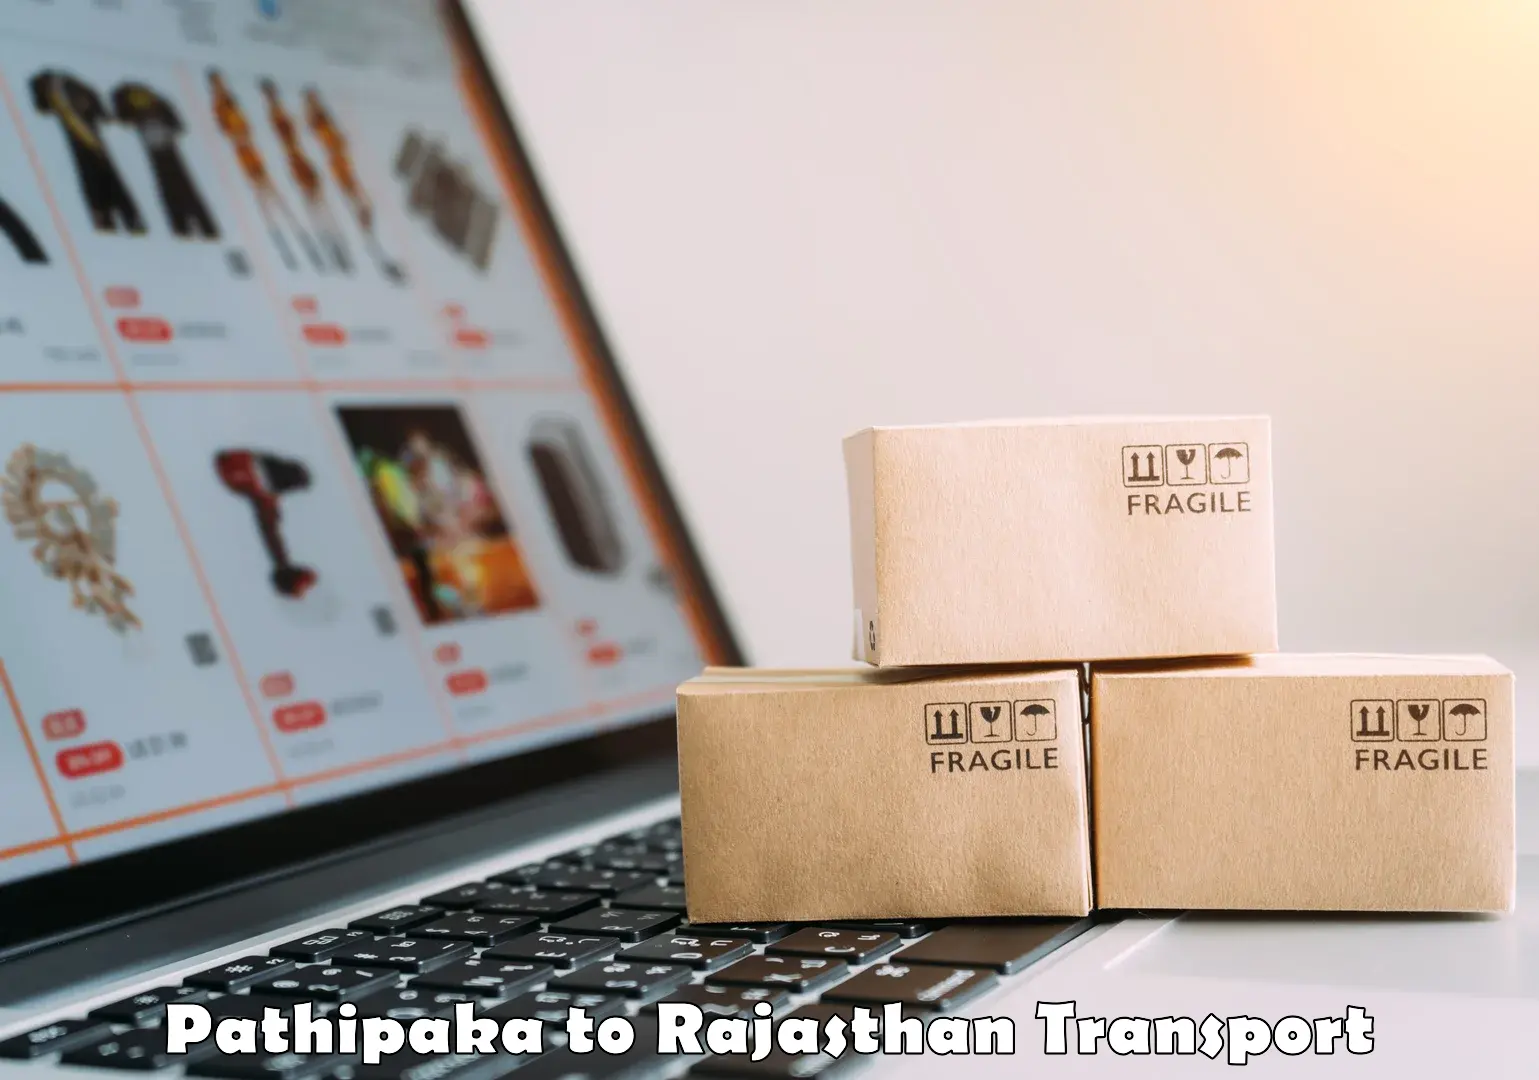 Furniture transport service Pathipaka to Rajasthan